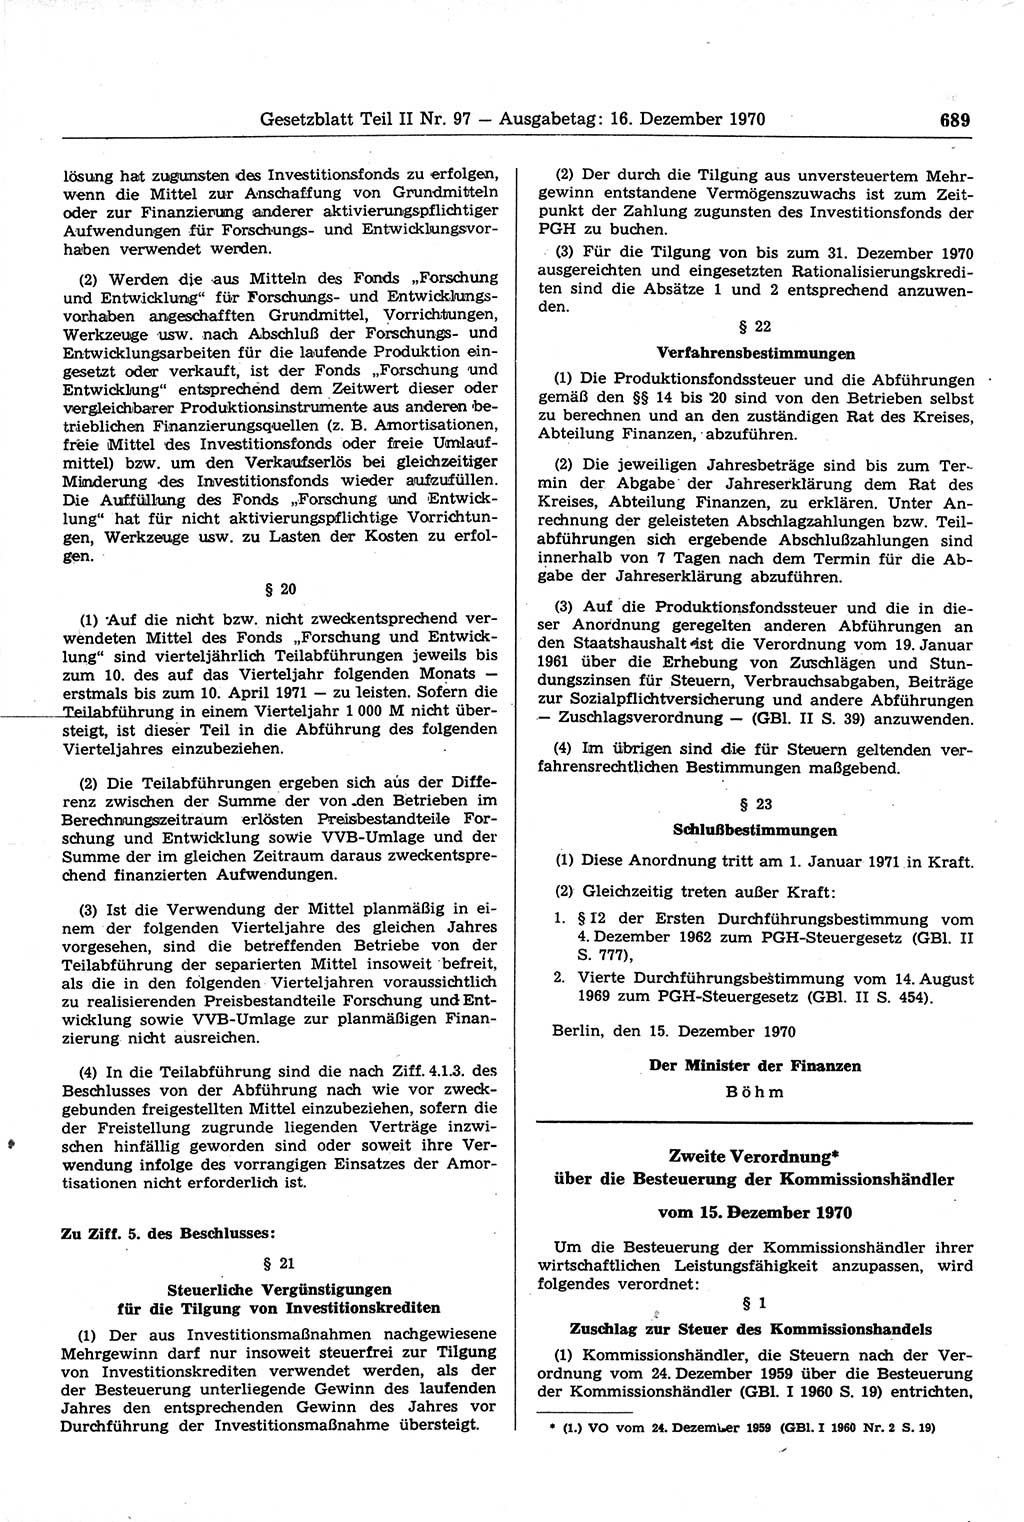 Gesetzblatt (GBl.) der Deutschen Demokratischen Republik (DDR) Teil ⅠⅠ 1970, Seite 689 (GBl. DDR ⅠⅠ 1970, S. 689)